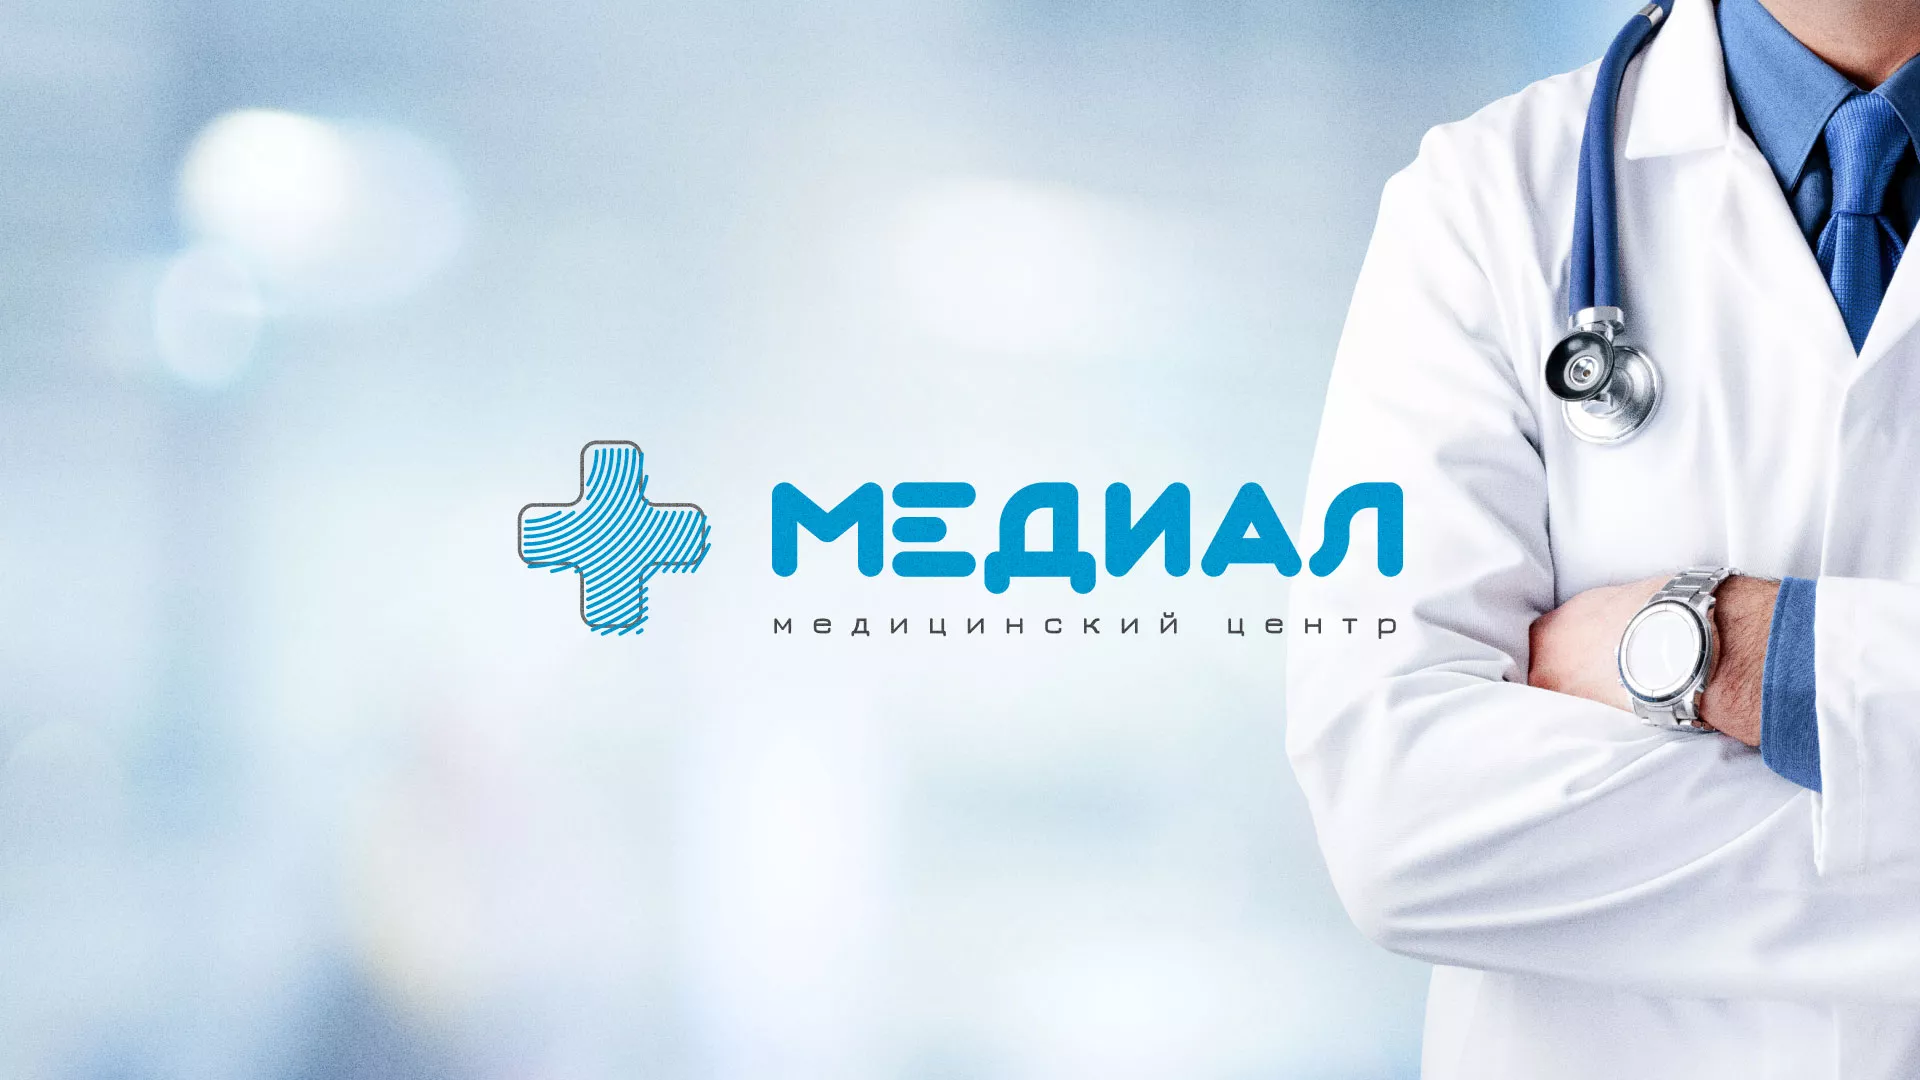 Создание сайта для медицинского центра «Медиал» в Михайловке